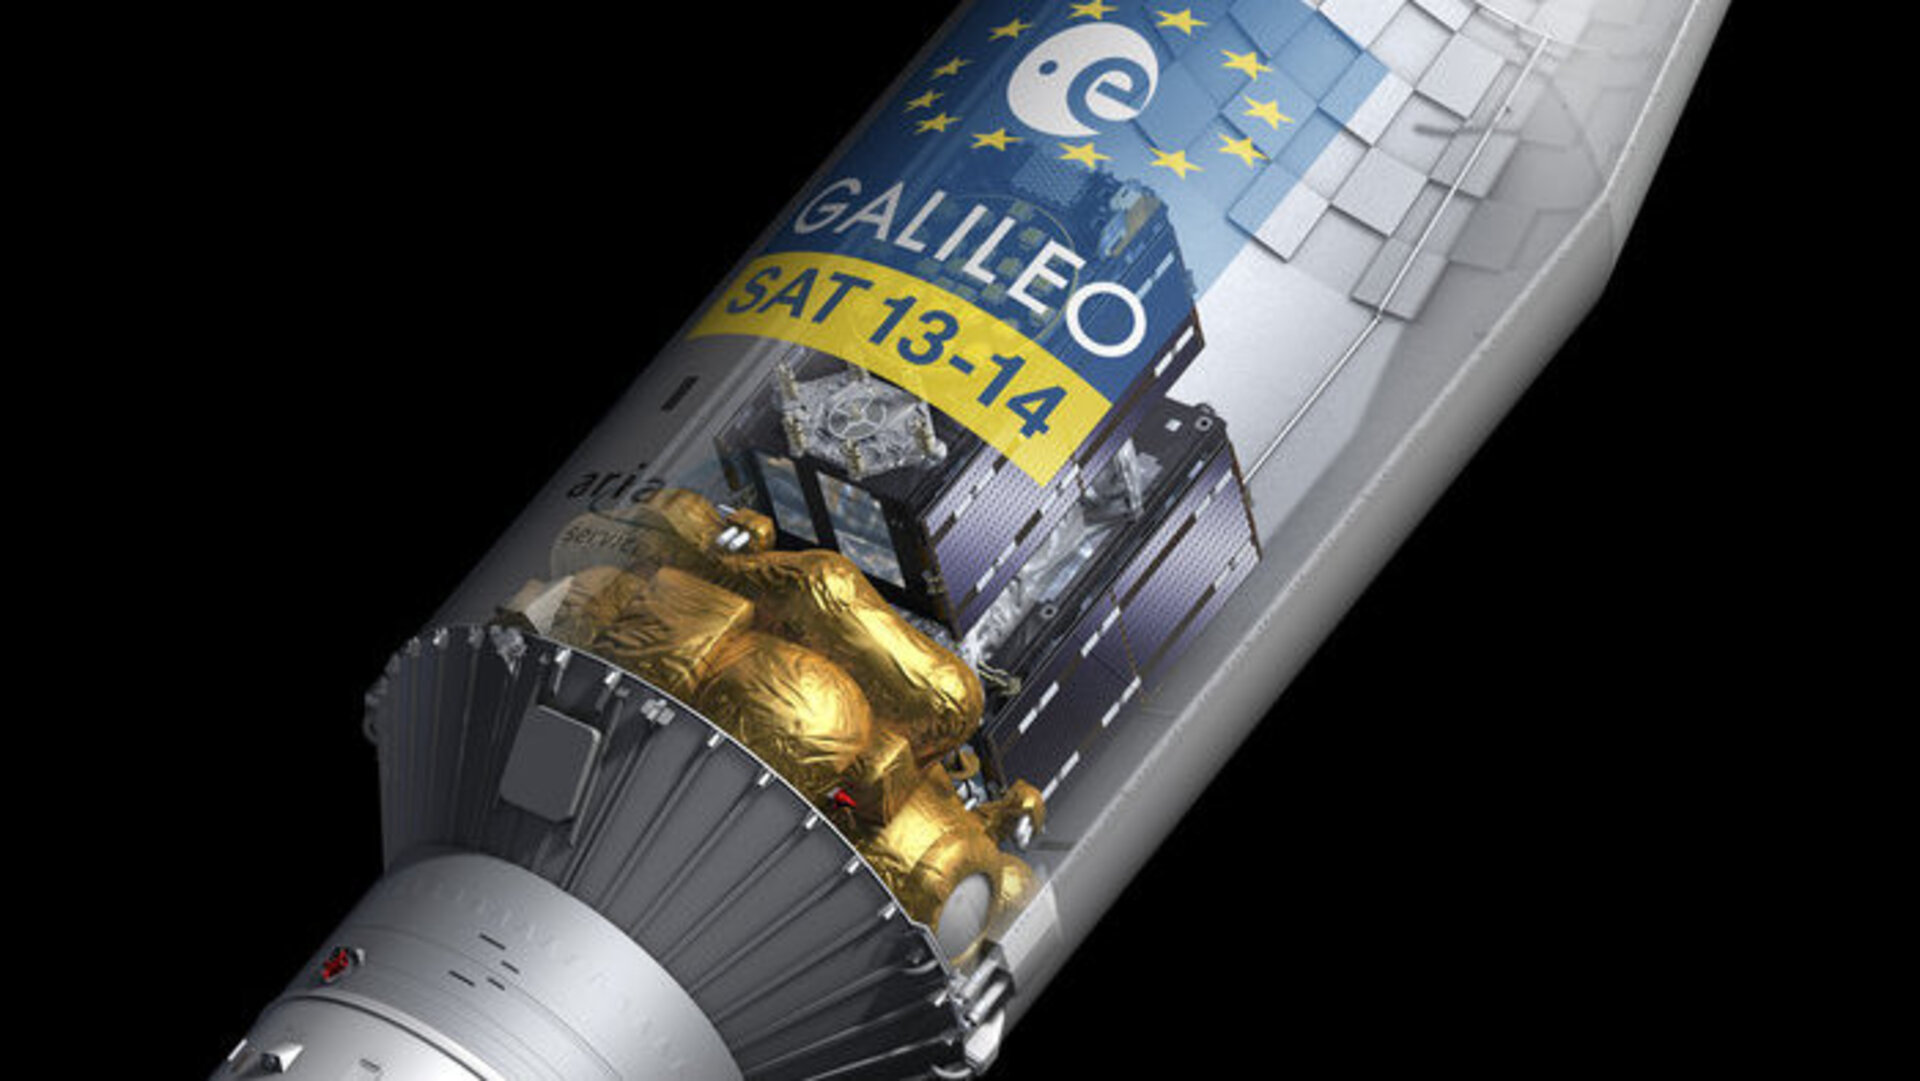 Kanderaketi Sojuz ülemise osa Fregat sissevaade. Fregati sisemusse on kinnitatud satelliidid Galileo 13 ja Galileo 14. Just Fregatiga läbisid sateliidid kosmosesse lennutamisel kõige pikema osa teekonnast. Kujutis: ESA–Pierre Carril, 2016